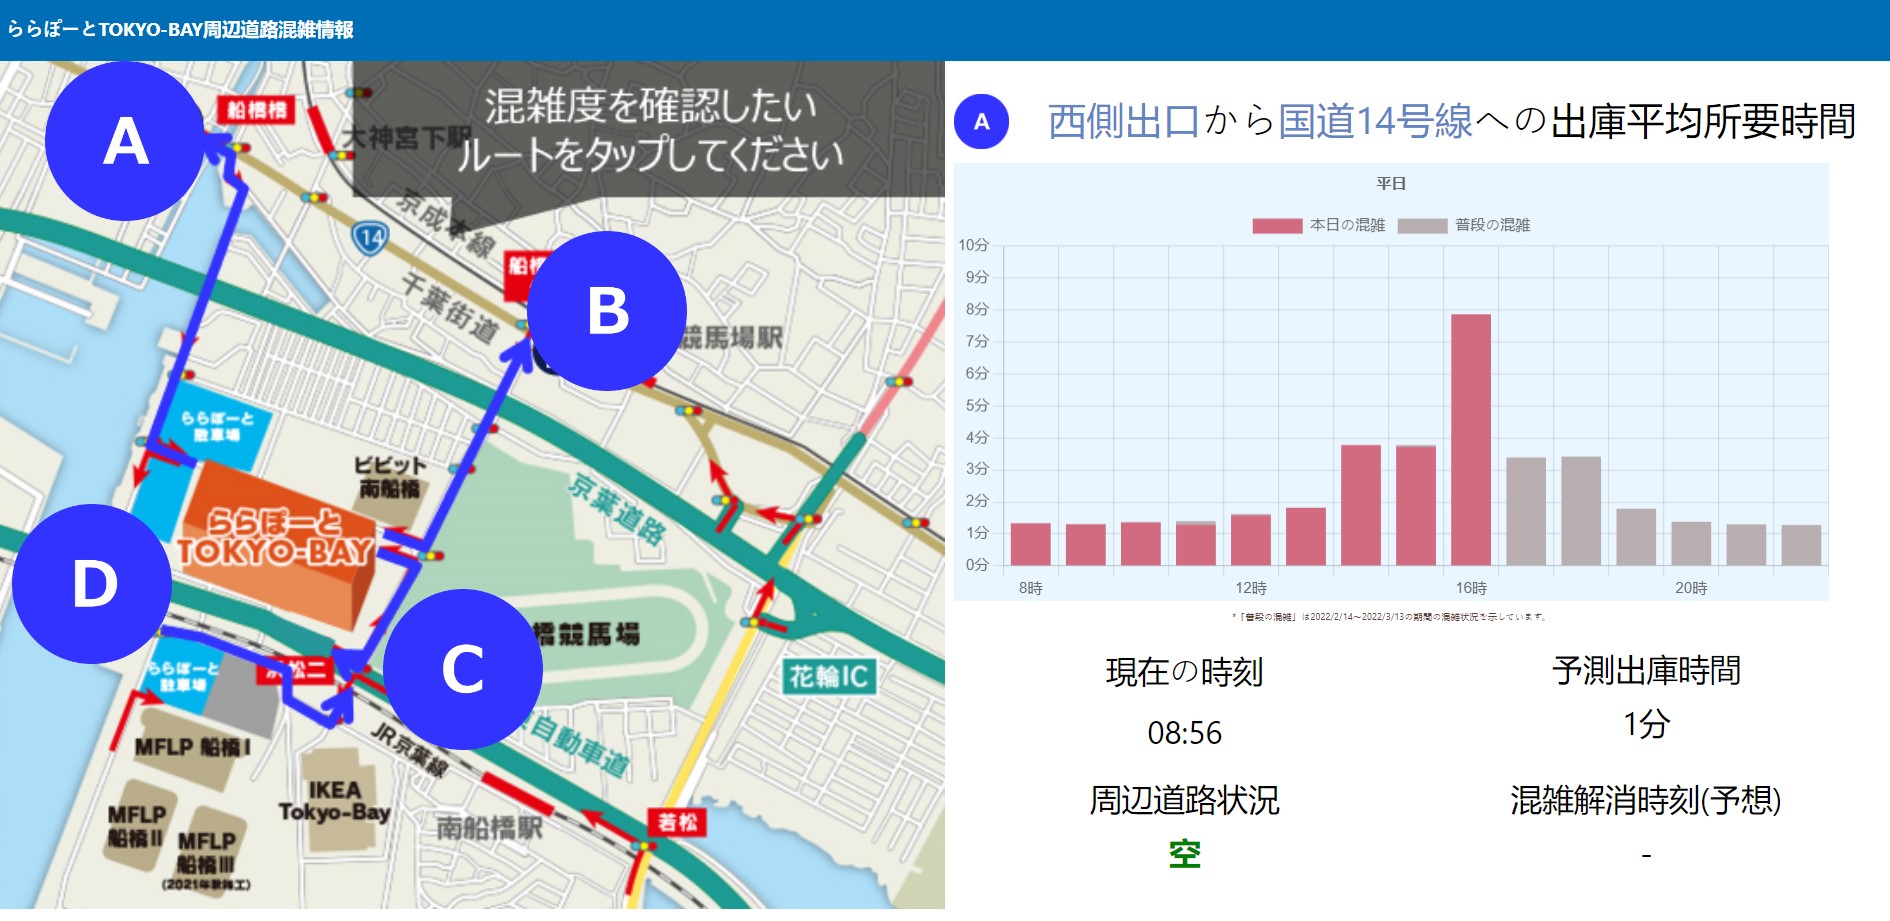 Technologia, która udzieli informacji o korkach i zatorach na drogach wokół parkingu centrum handlowego (źródło: Parking Information Center TOKYO-BAY)